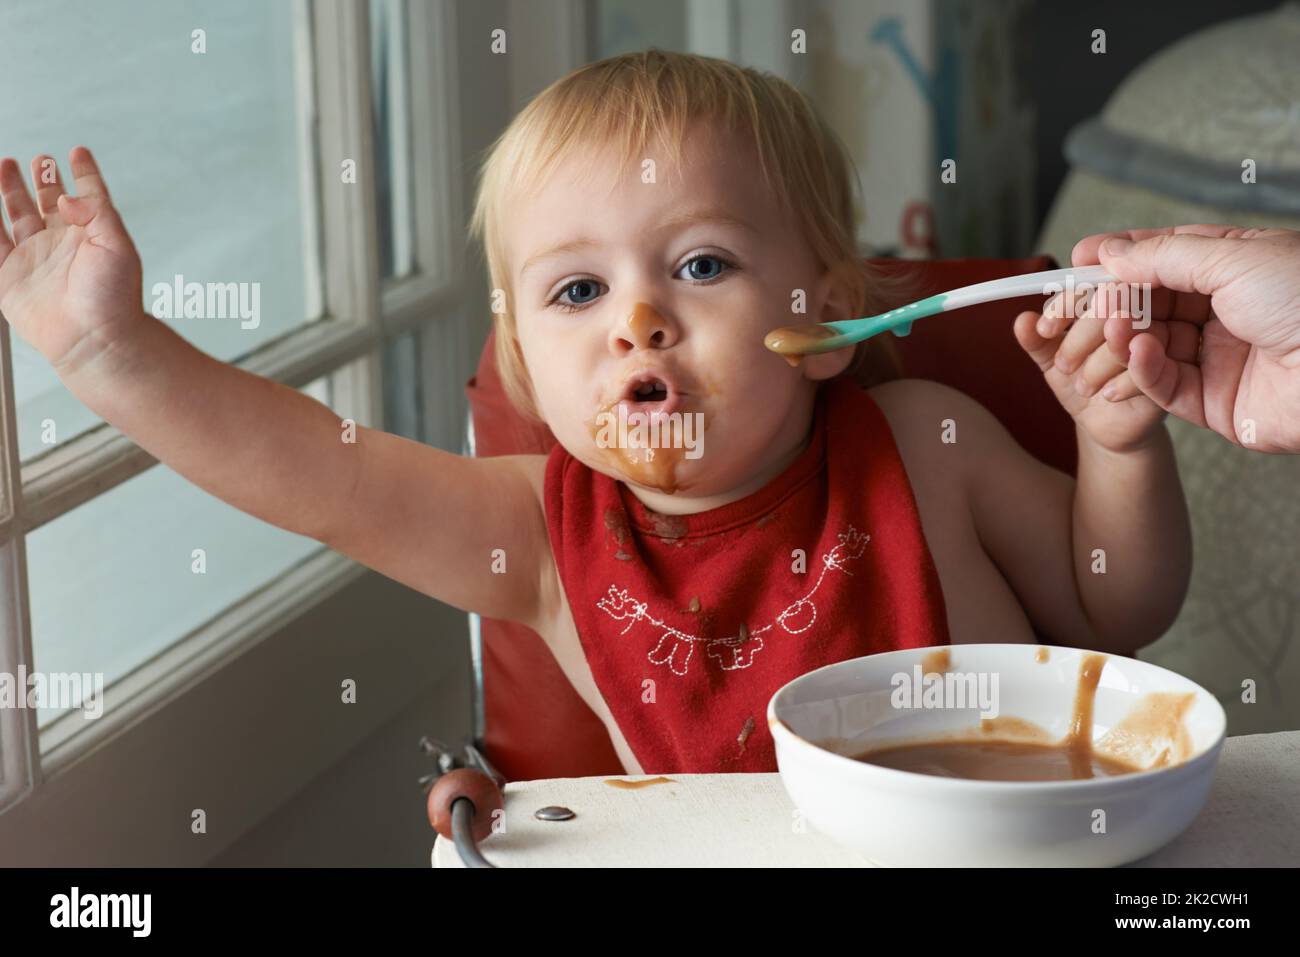 Le garçon en pleine croissance a besoin de sa nourriture. Un jeune garçon mangeant à son coeur contenu dans sa chaise haute. Banque D'Images